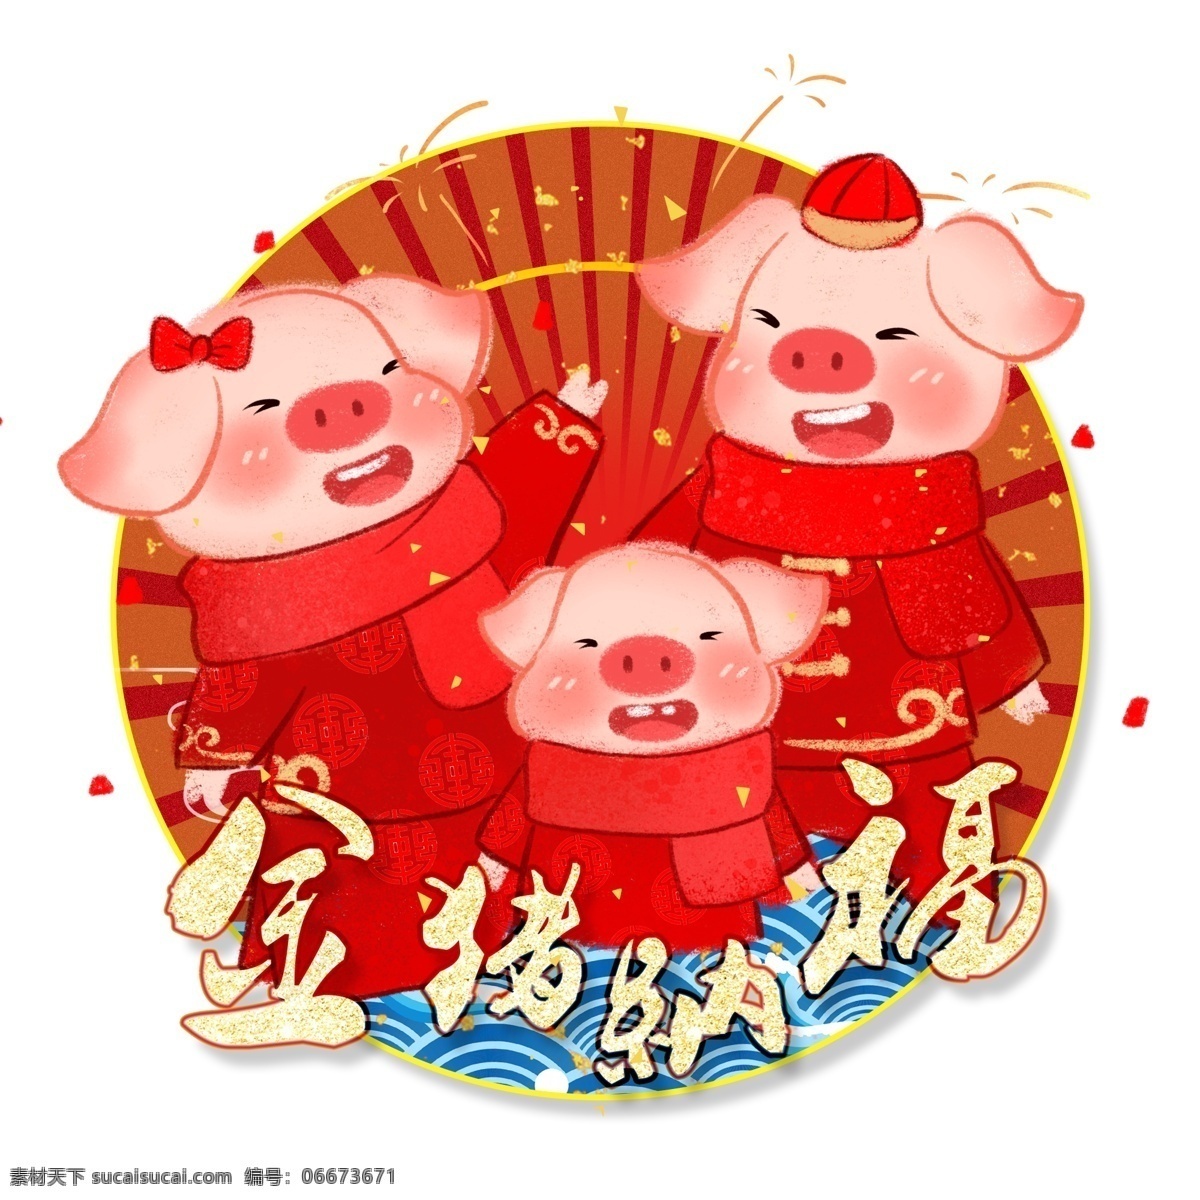 新年 卡通 手绘 金 猪 纳福 猪年 金猪 新春 过年 新春大吉 中国传统节日 中国重要节日 二十四节气 卡通手绘风 暖色系 金猪纳福